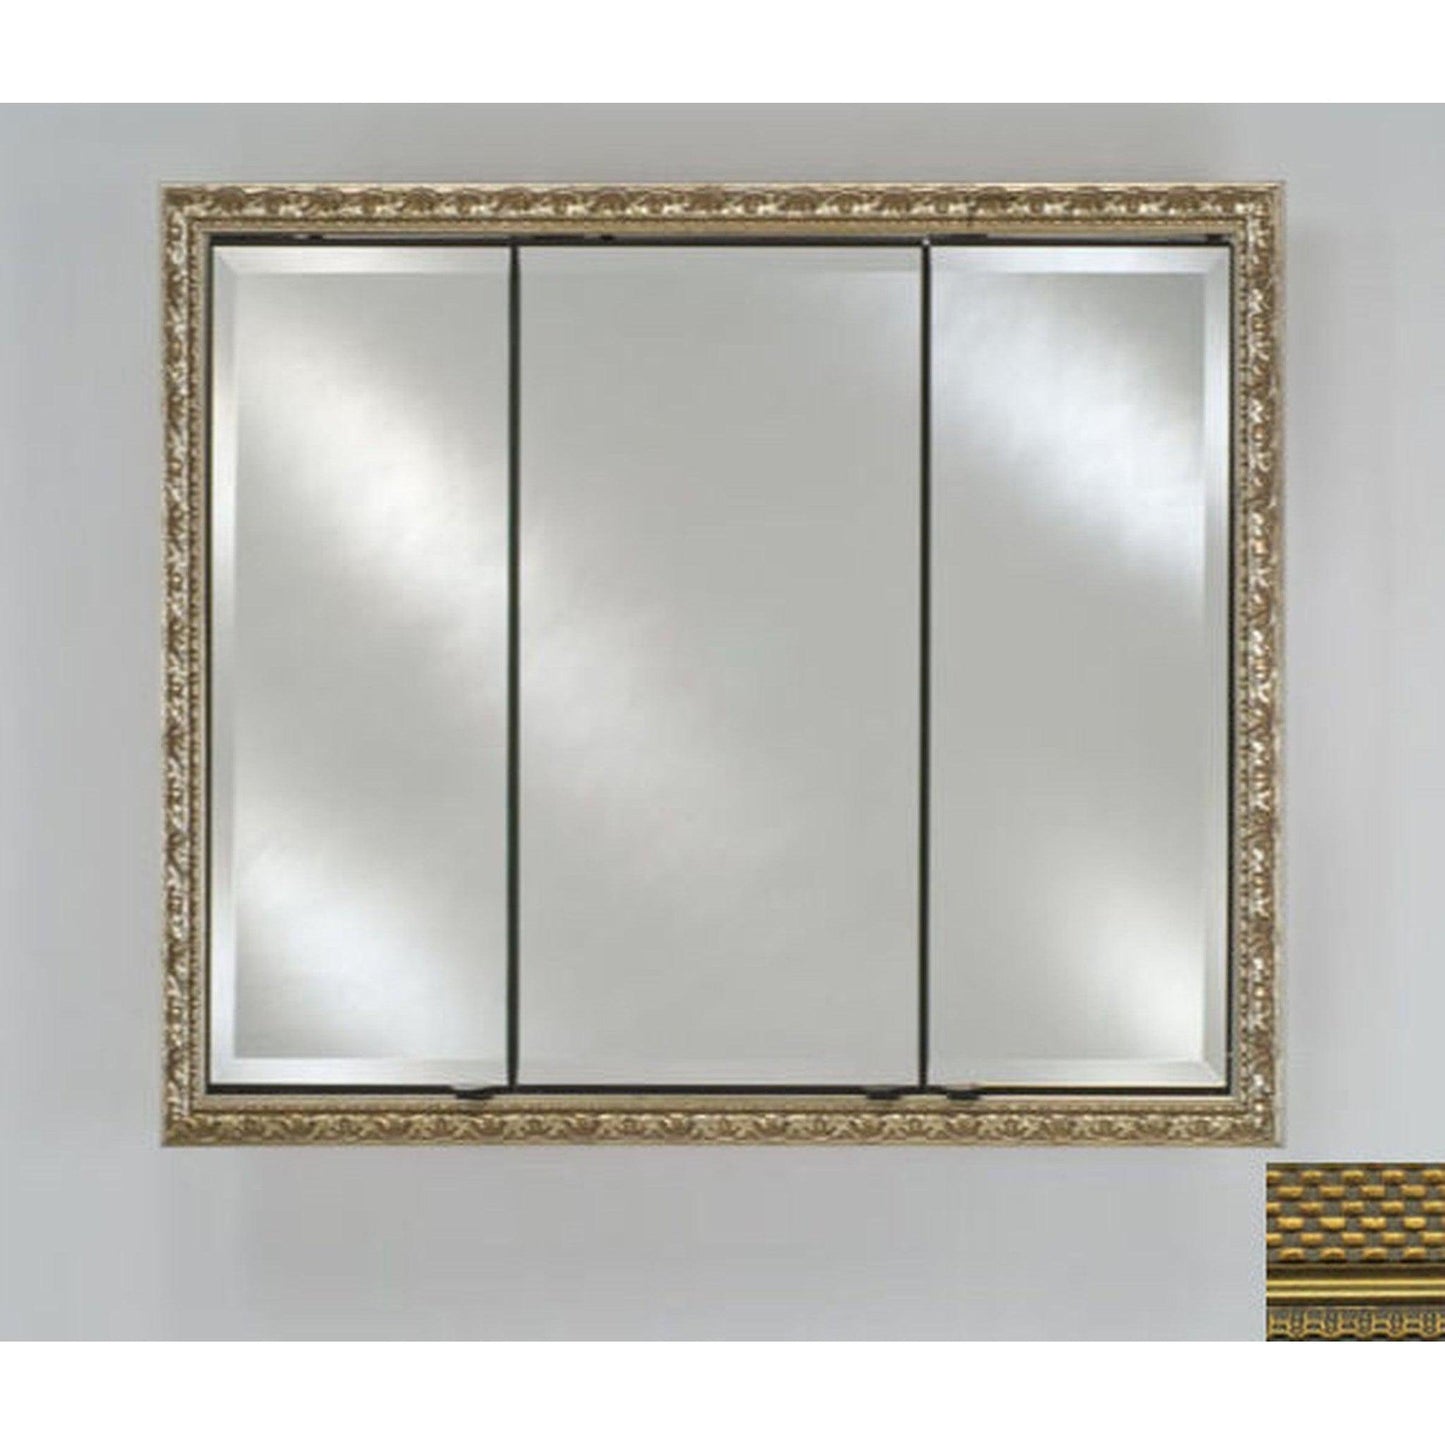 Afina Signature 44" x 30" Elegance Antique Gold Recessed Triple Door Medicine Cabinet With Beveled Edge Mirror